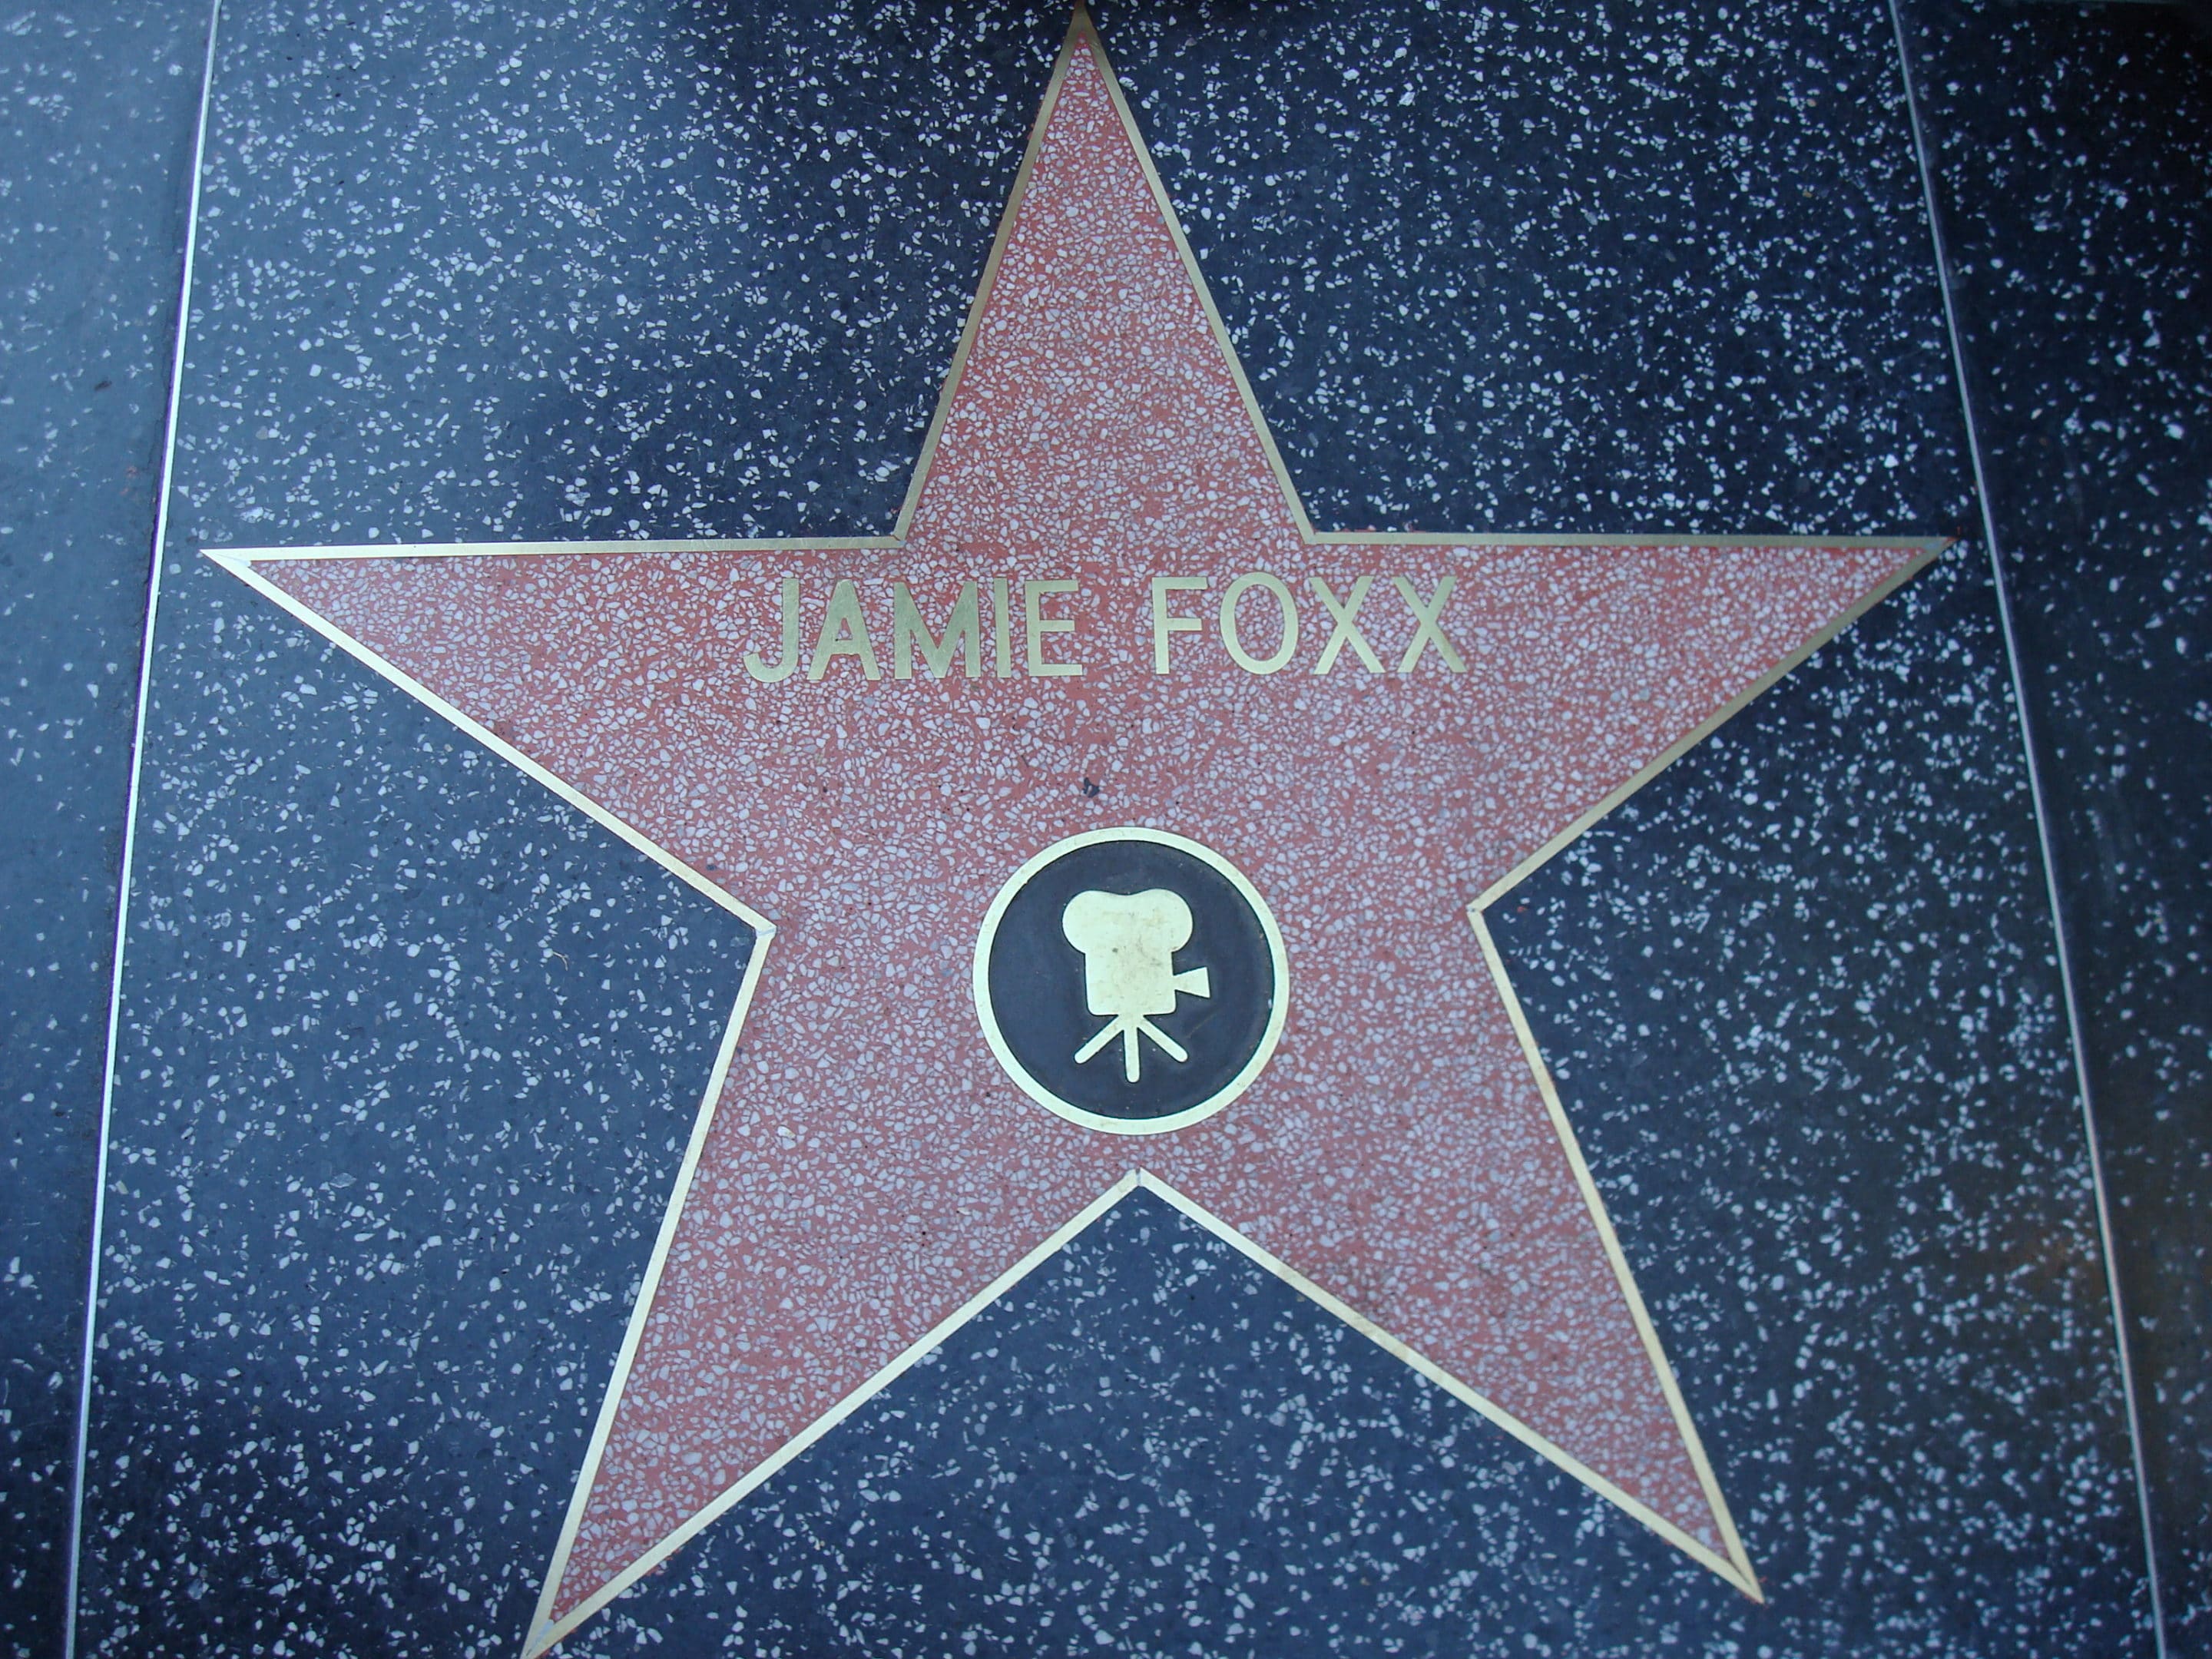 Jamie Foxx, MeToo